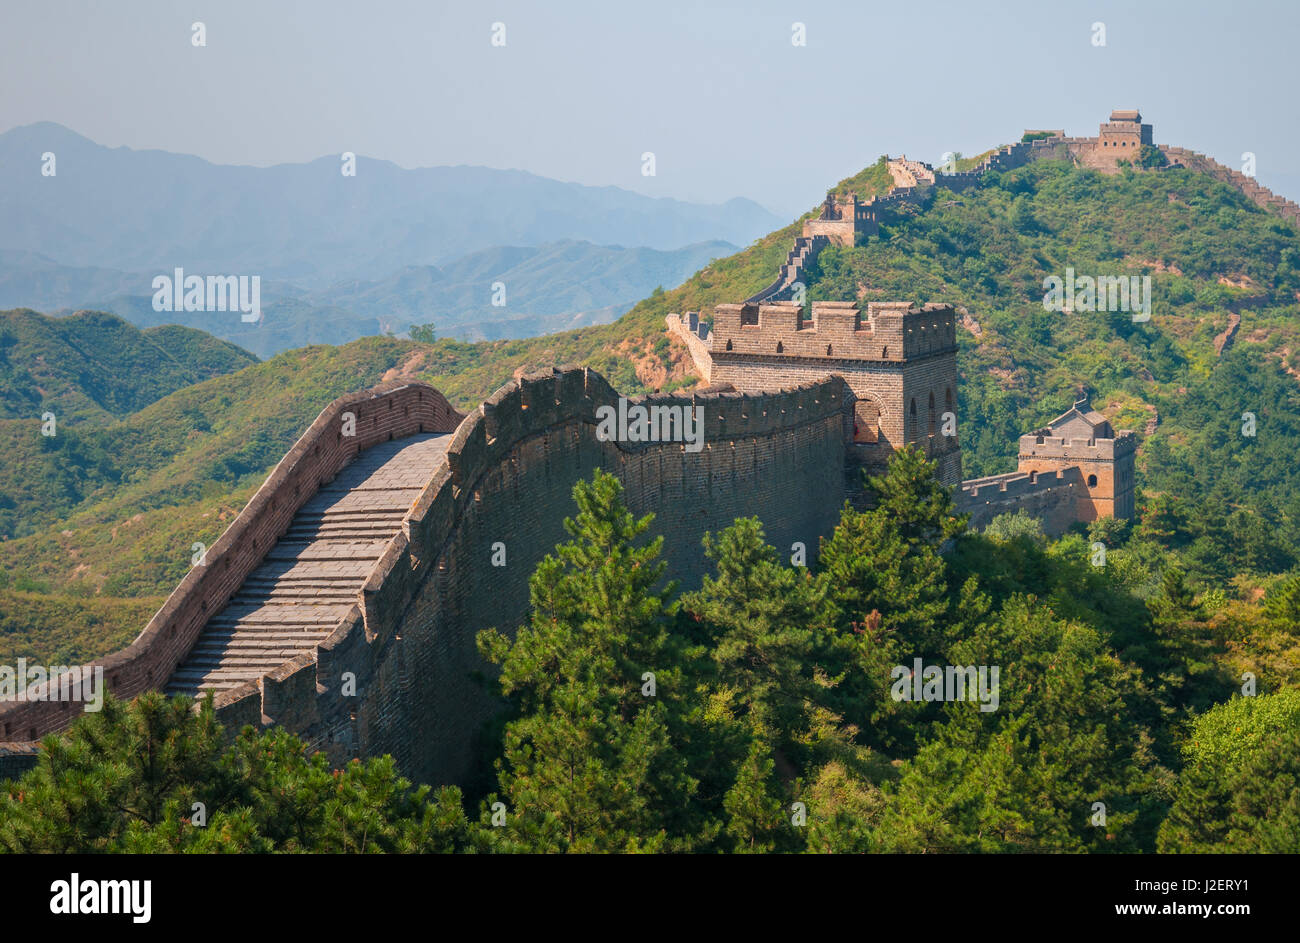 Die Chinesische Mauer in Jinshanling ohne Touristen in der Nähe von Peking, China. Stockfoto